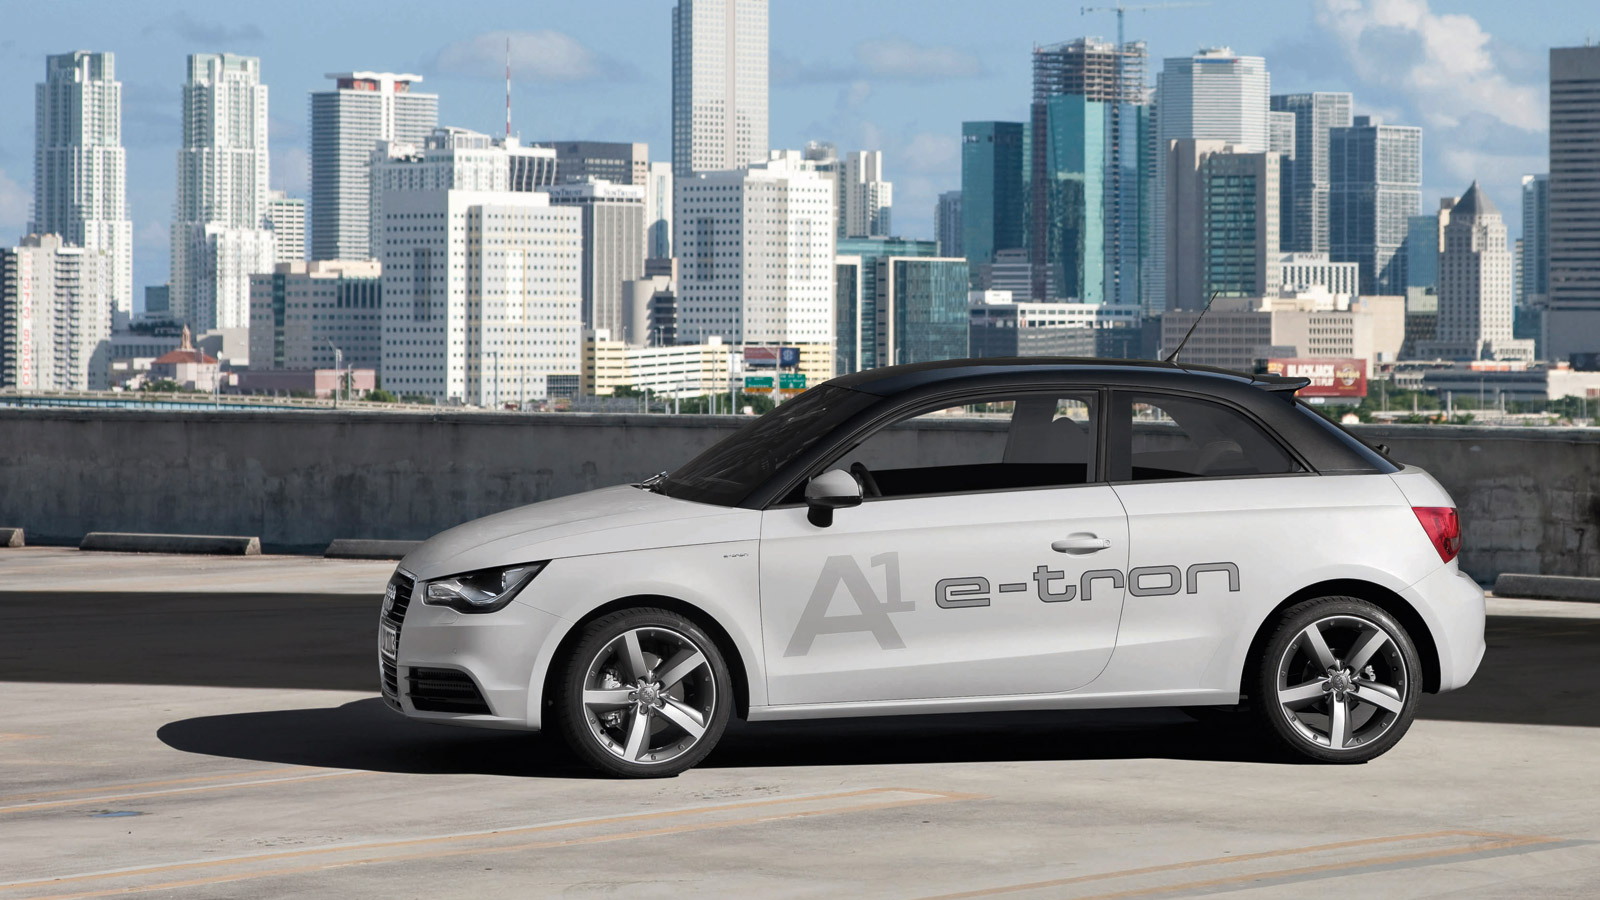 Audi A1 e-tron Dual-Mode Hybrid